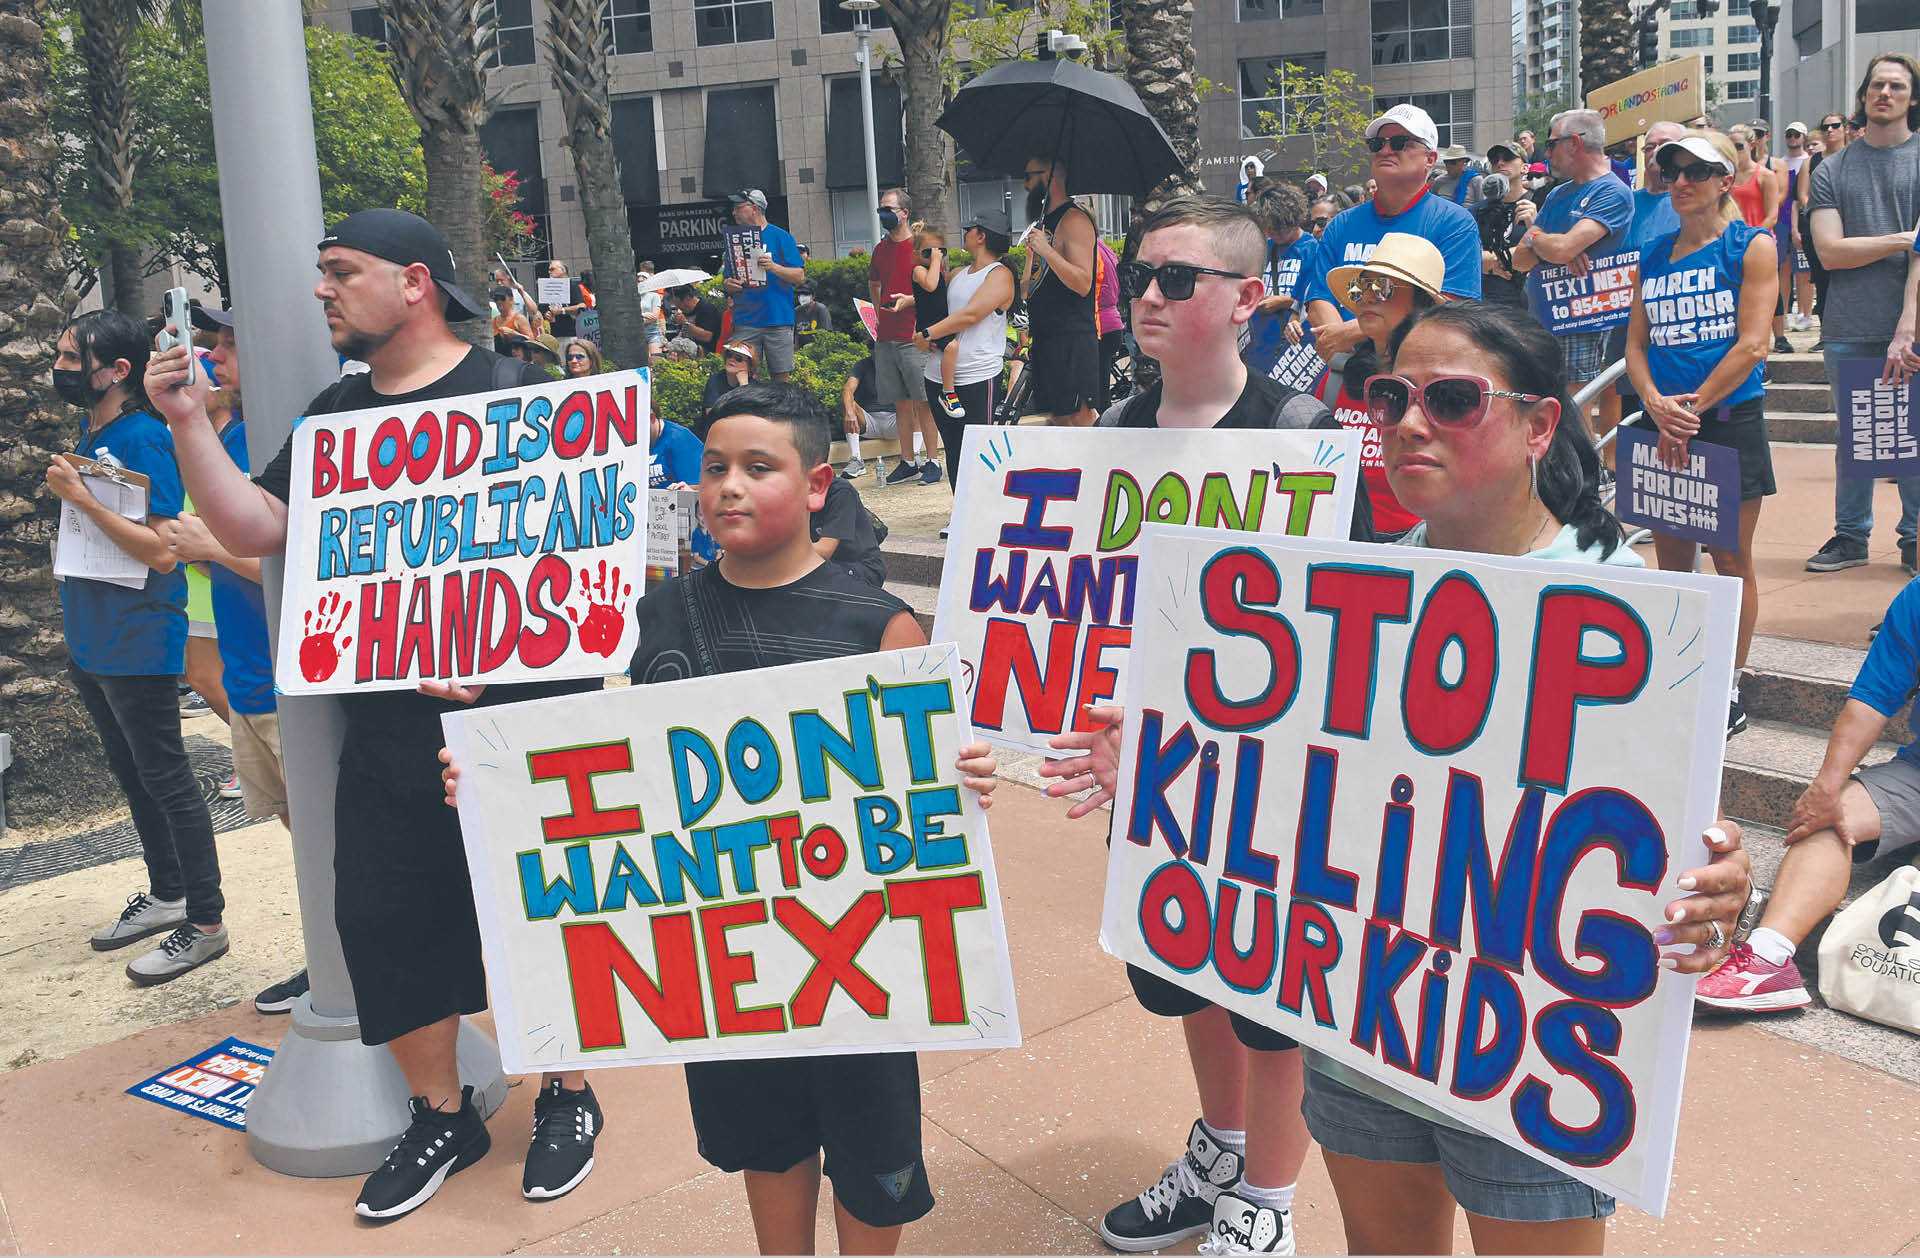 Marsz protestu po strzelaninach w Buffalo i Uvalde, w których zginęło 31 osób. Orlando, 11 czerwca 2022 r.